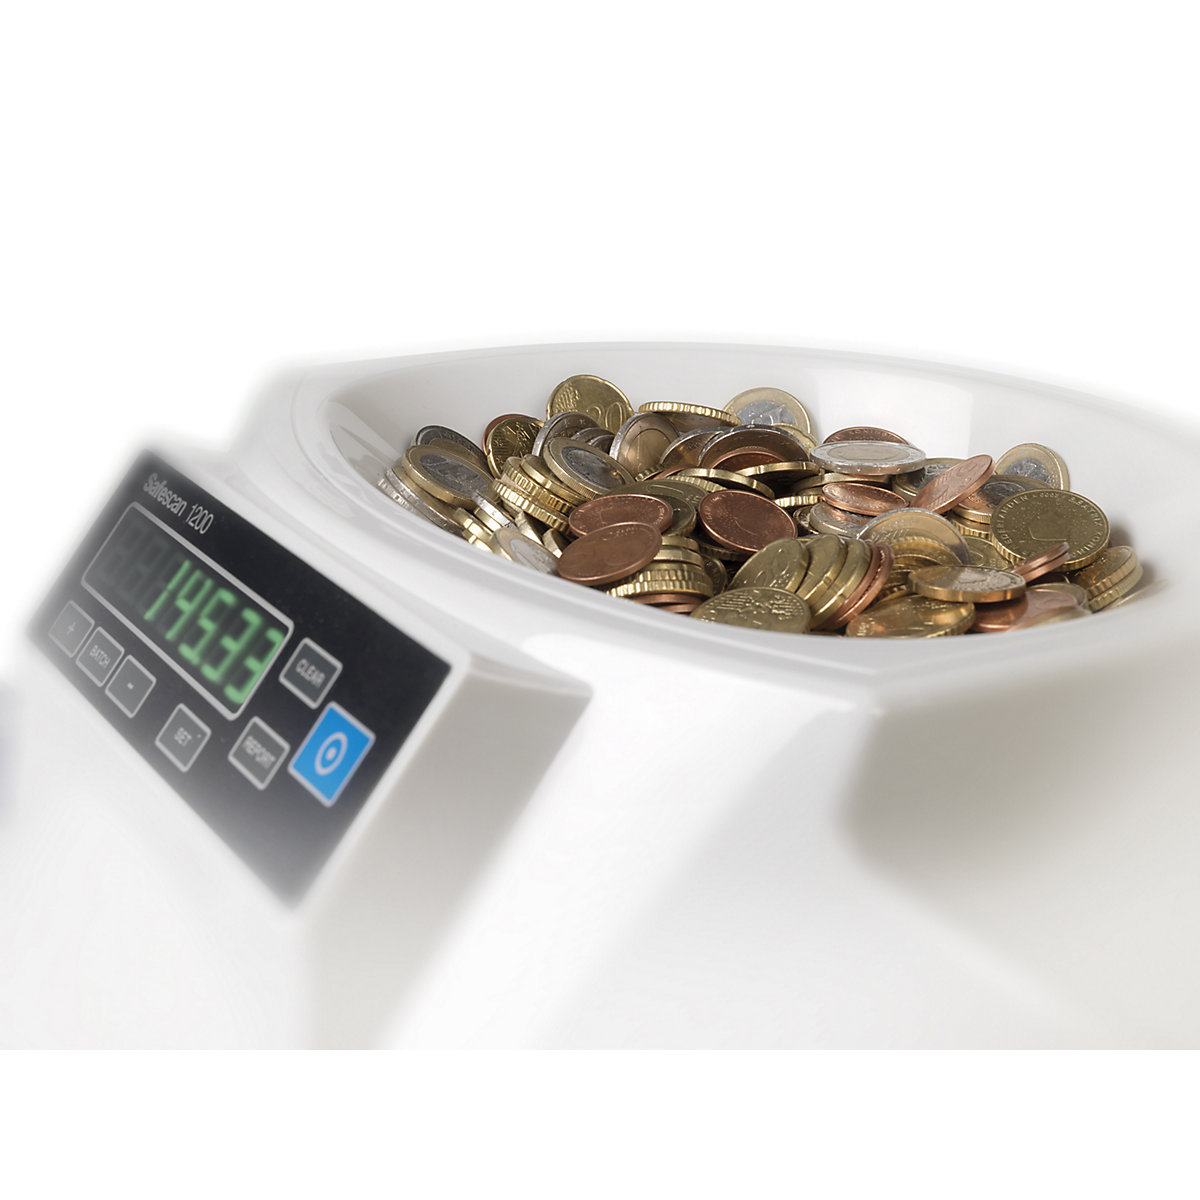 Naprava za štetje in razvrščanje kovancev – Safescan (Slika izdelka 3)-2